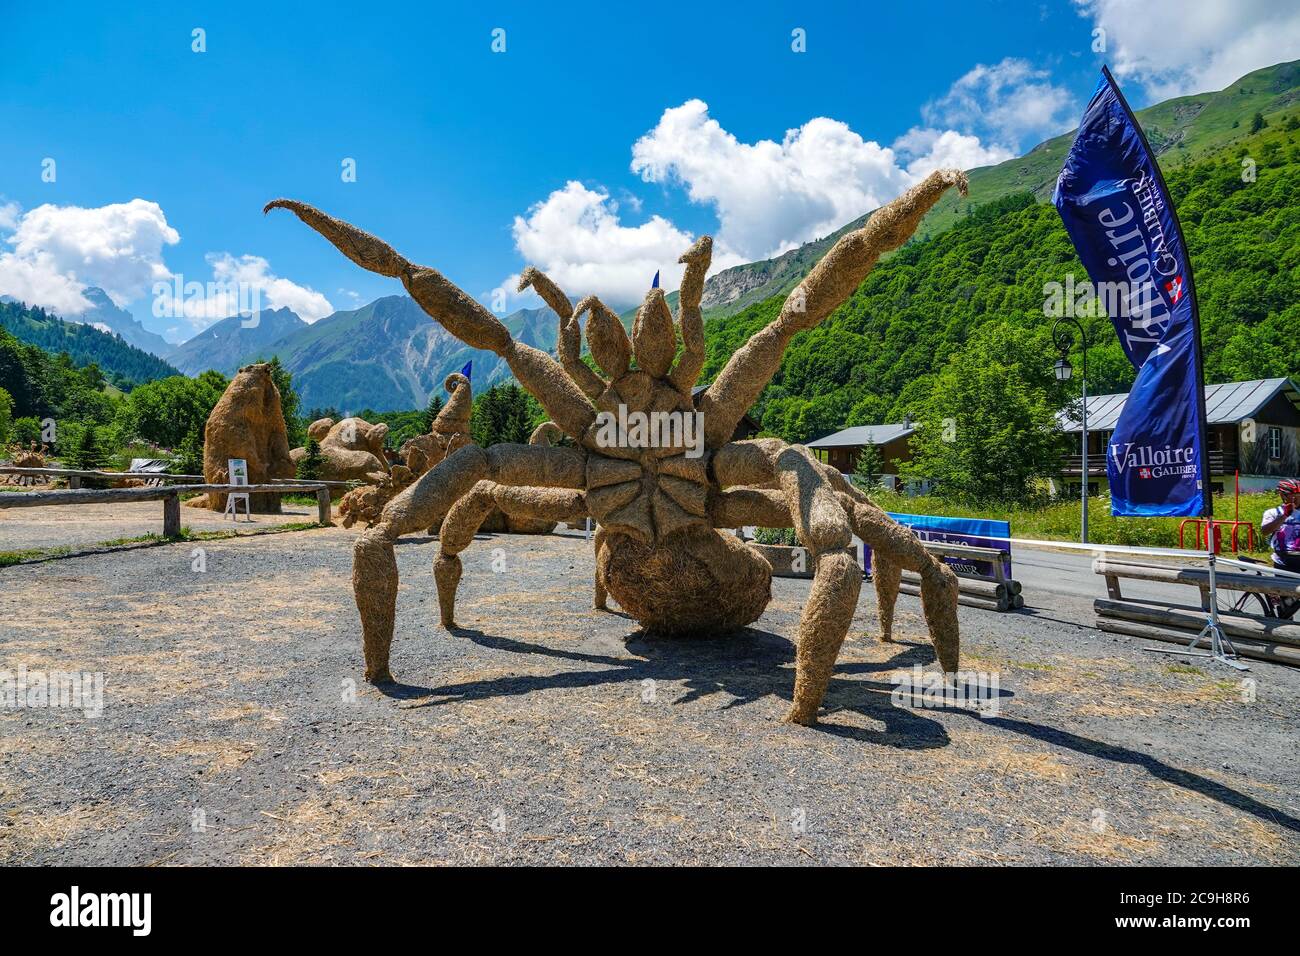 Grande exposition de sculptures en paille d'araignée, Valloire, Maurienne, France Banque D'Images